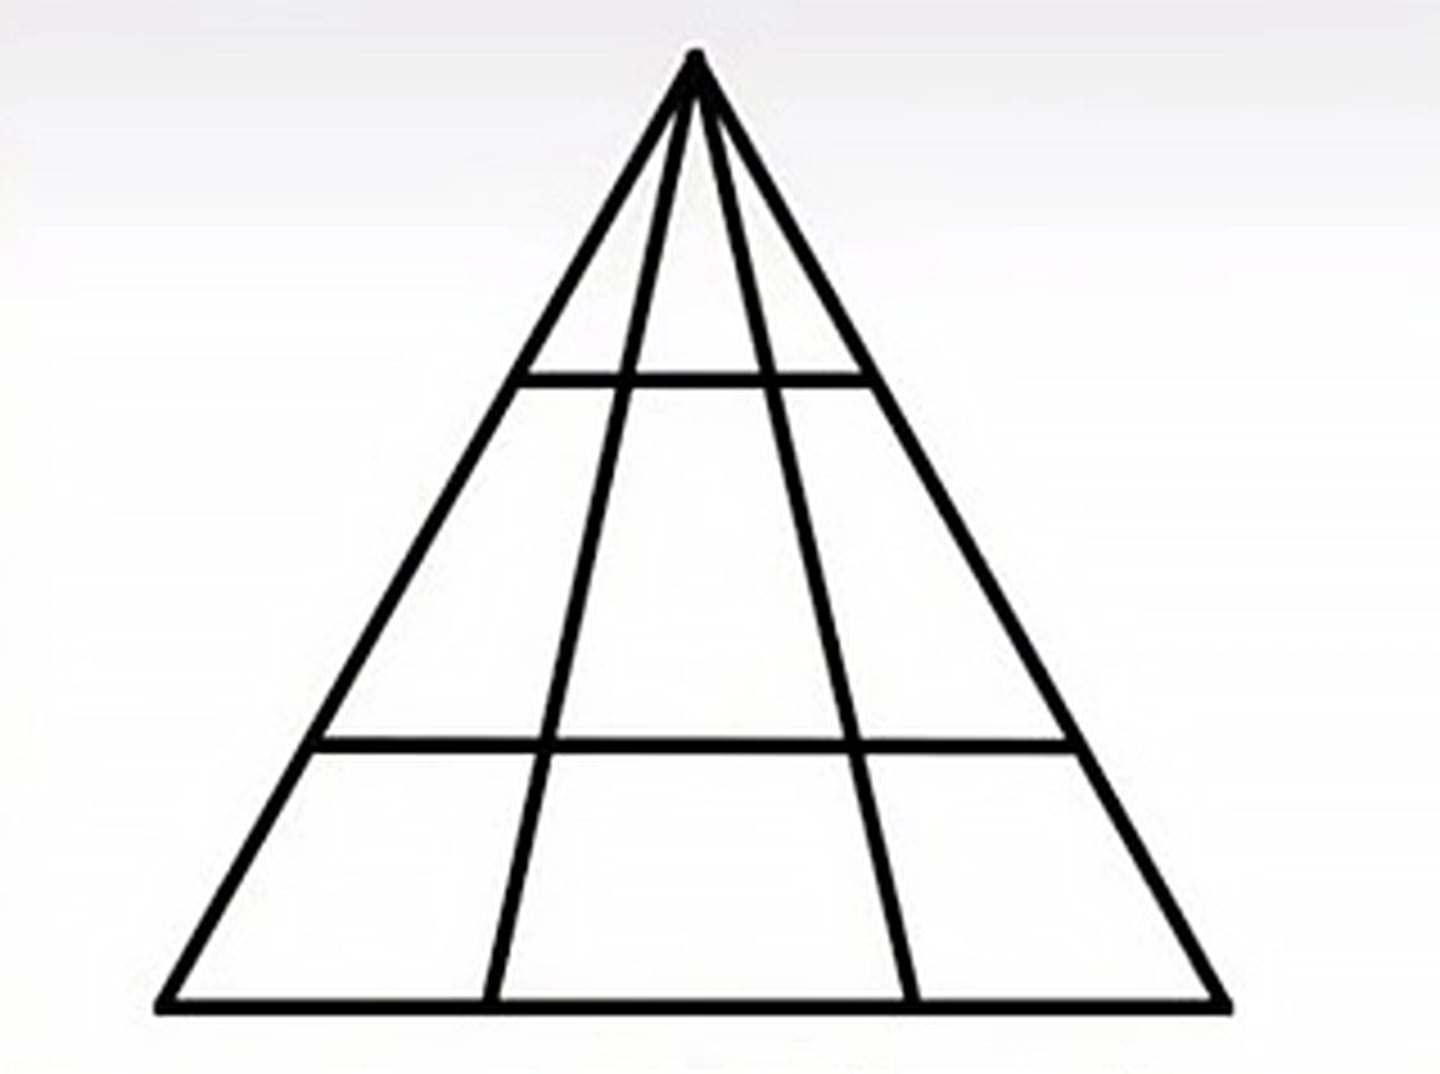 ¿Cuántos triángulos puedes ver en la imagen?